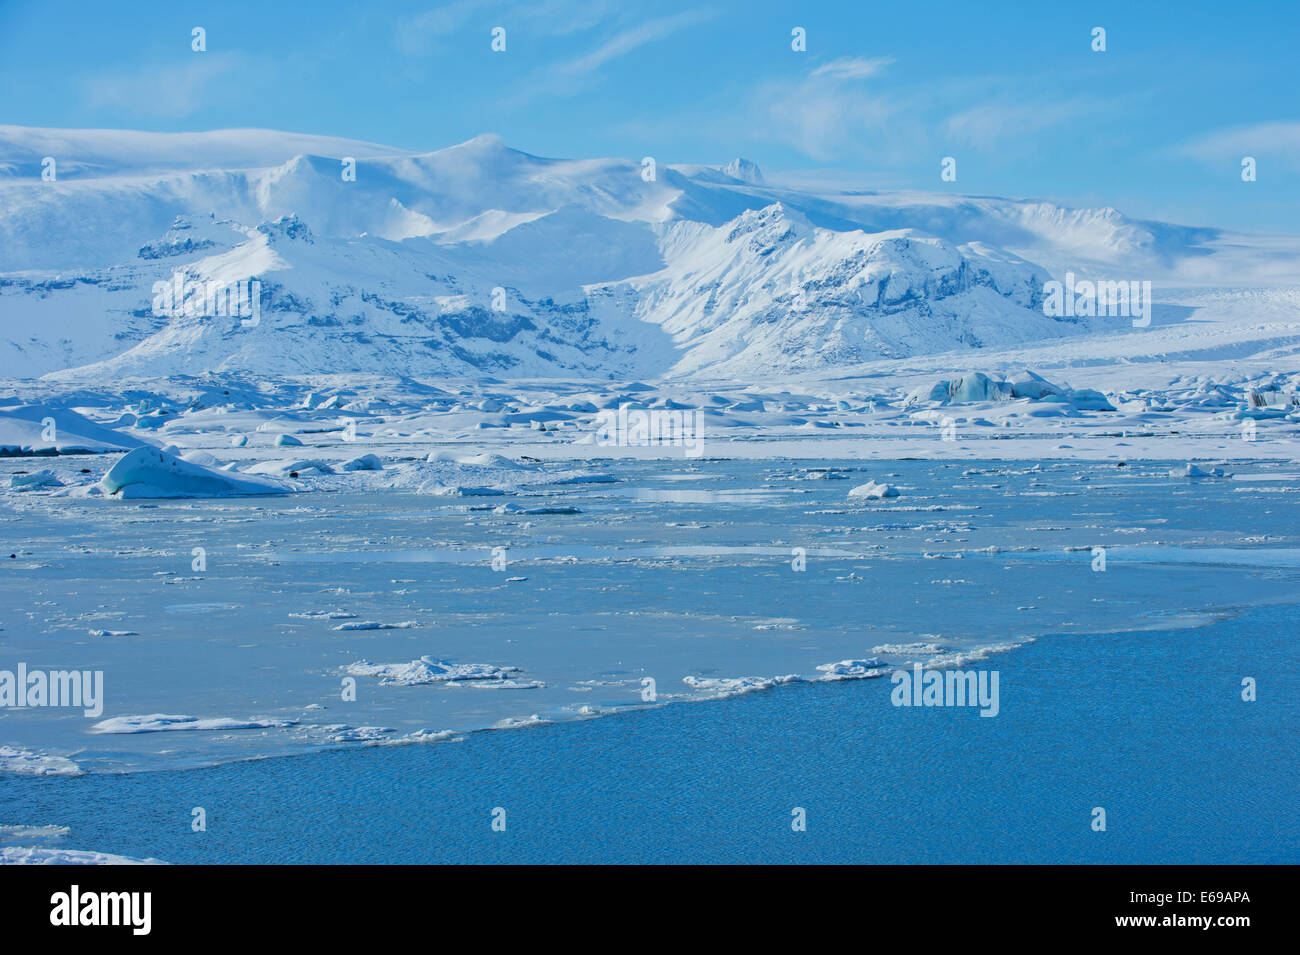 Montagnes enneigées surplombant le paysage de l'Arctique Banque D'Images